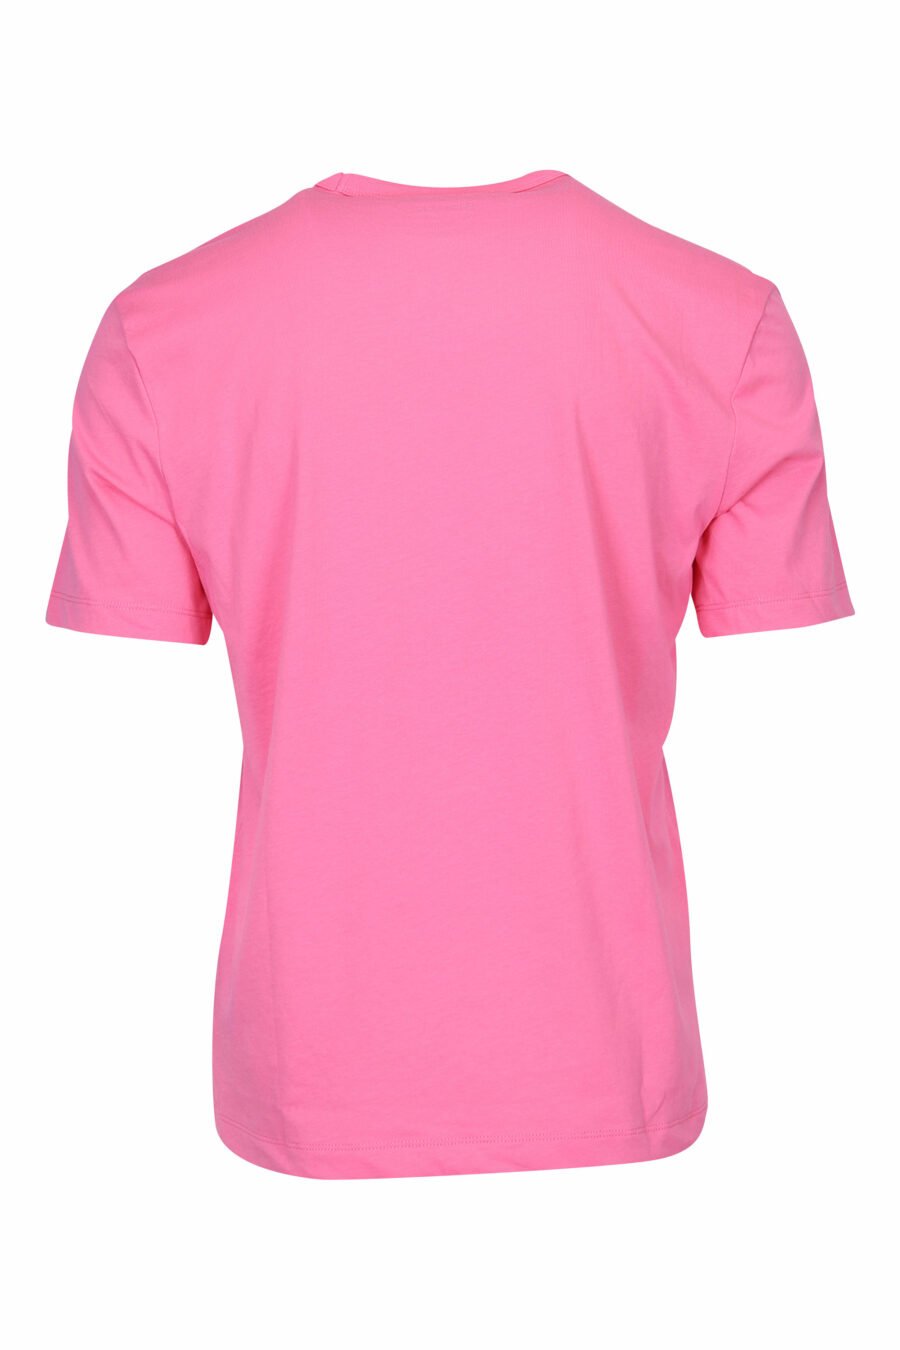 Camiseta rosa con maxilogo monocromático centro - 8058610799205 1